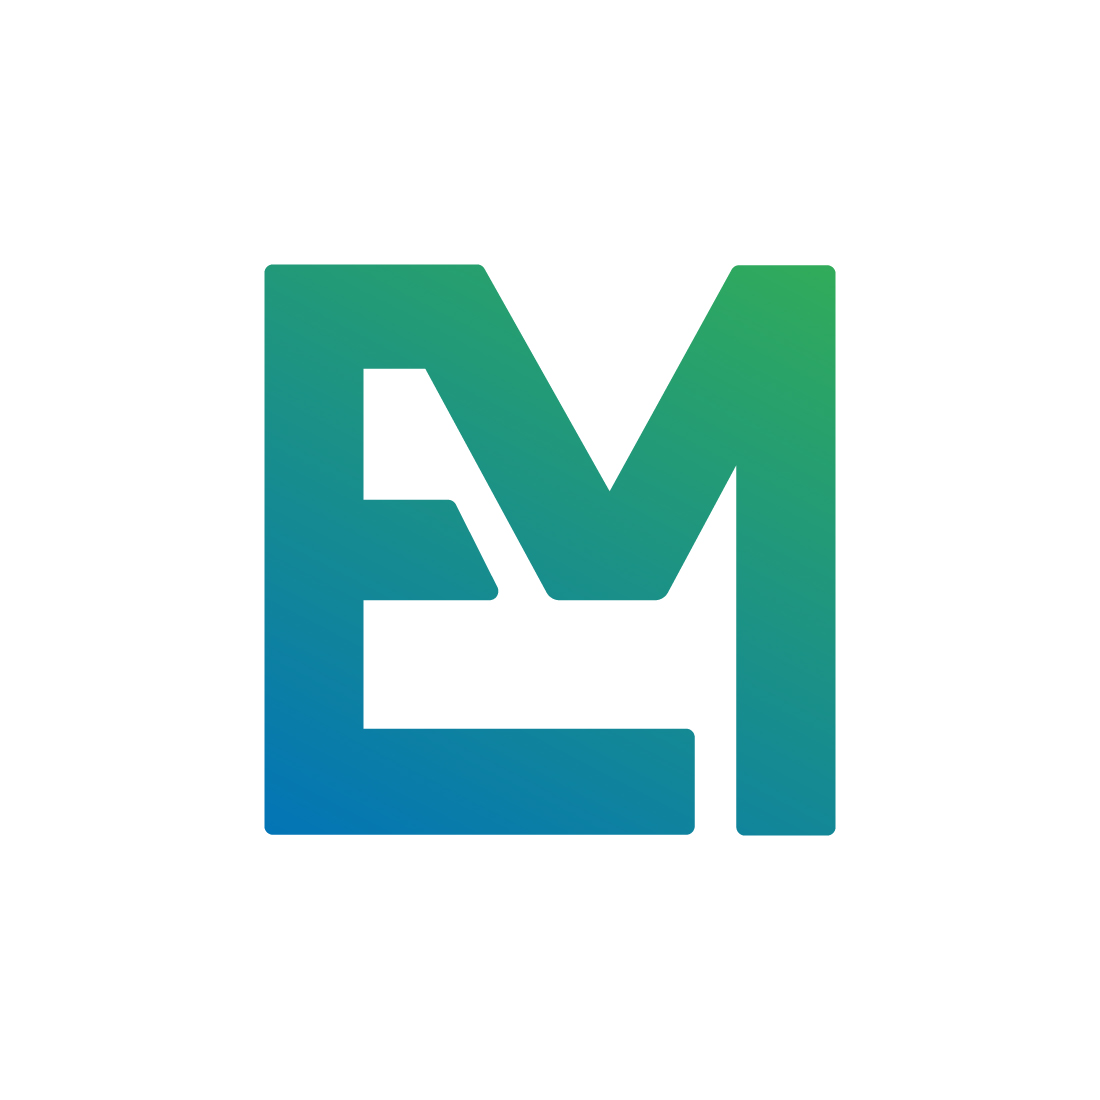 EM logo design preview image.